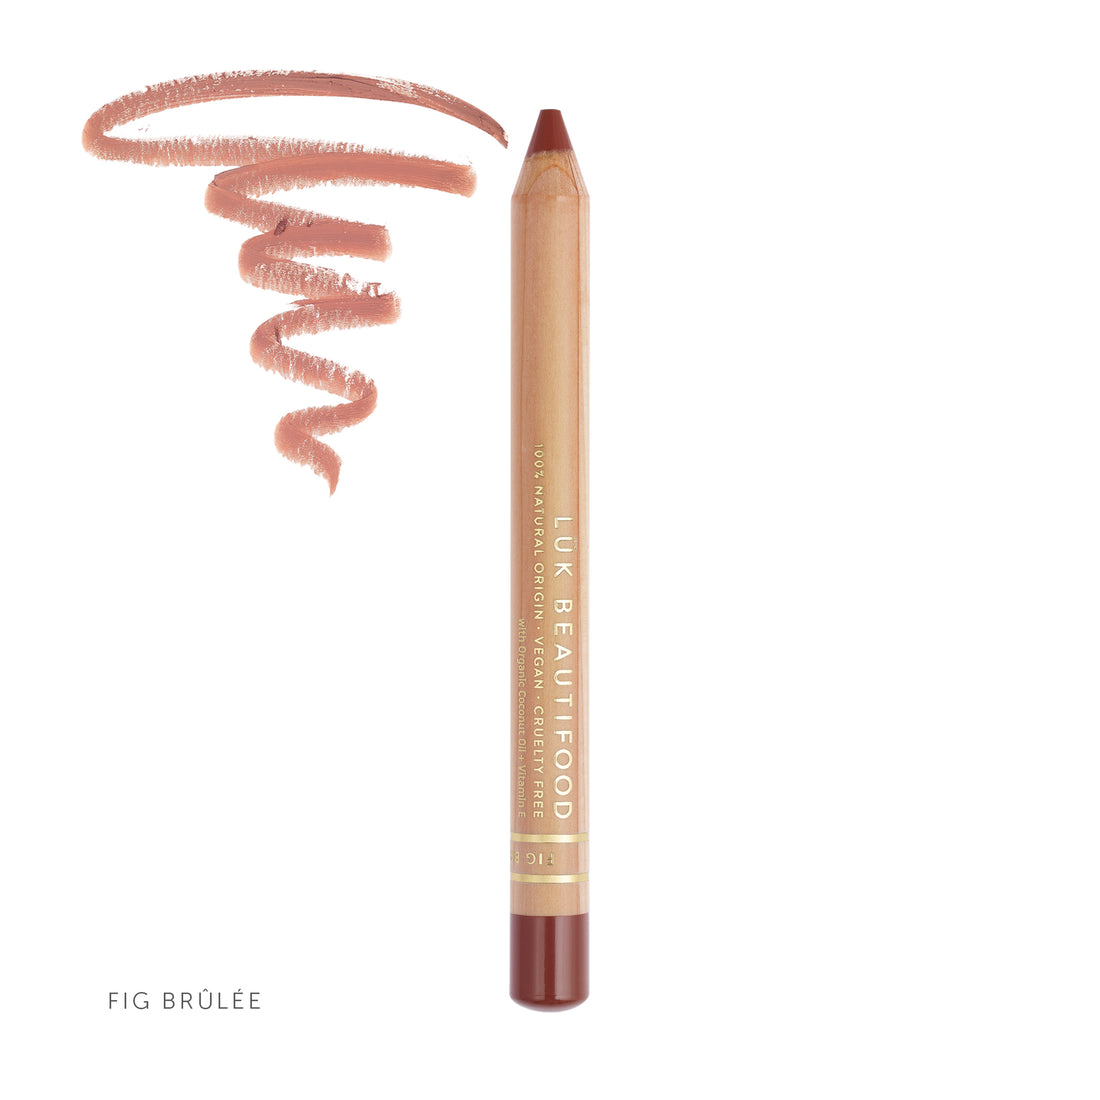 Natural Lipstick Crayon in Fig Brûlée